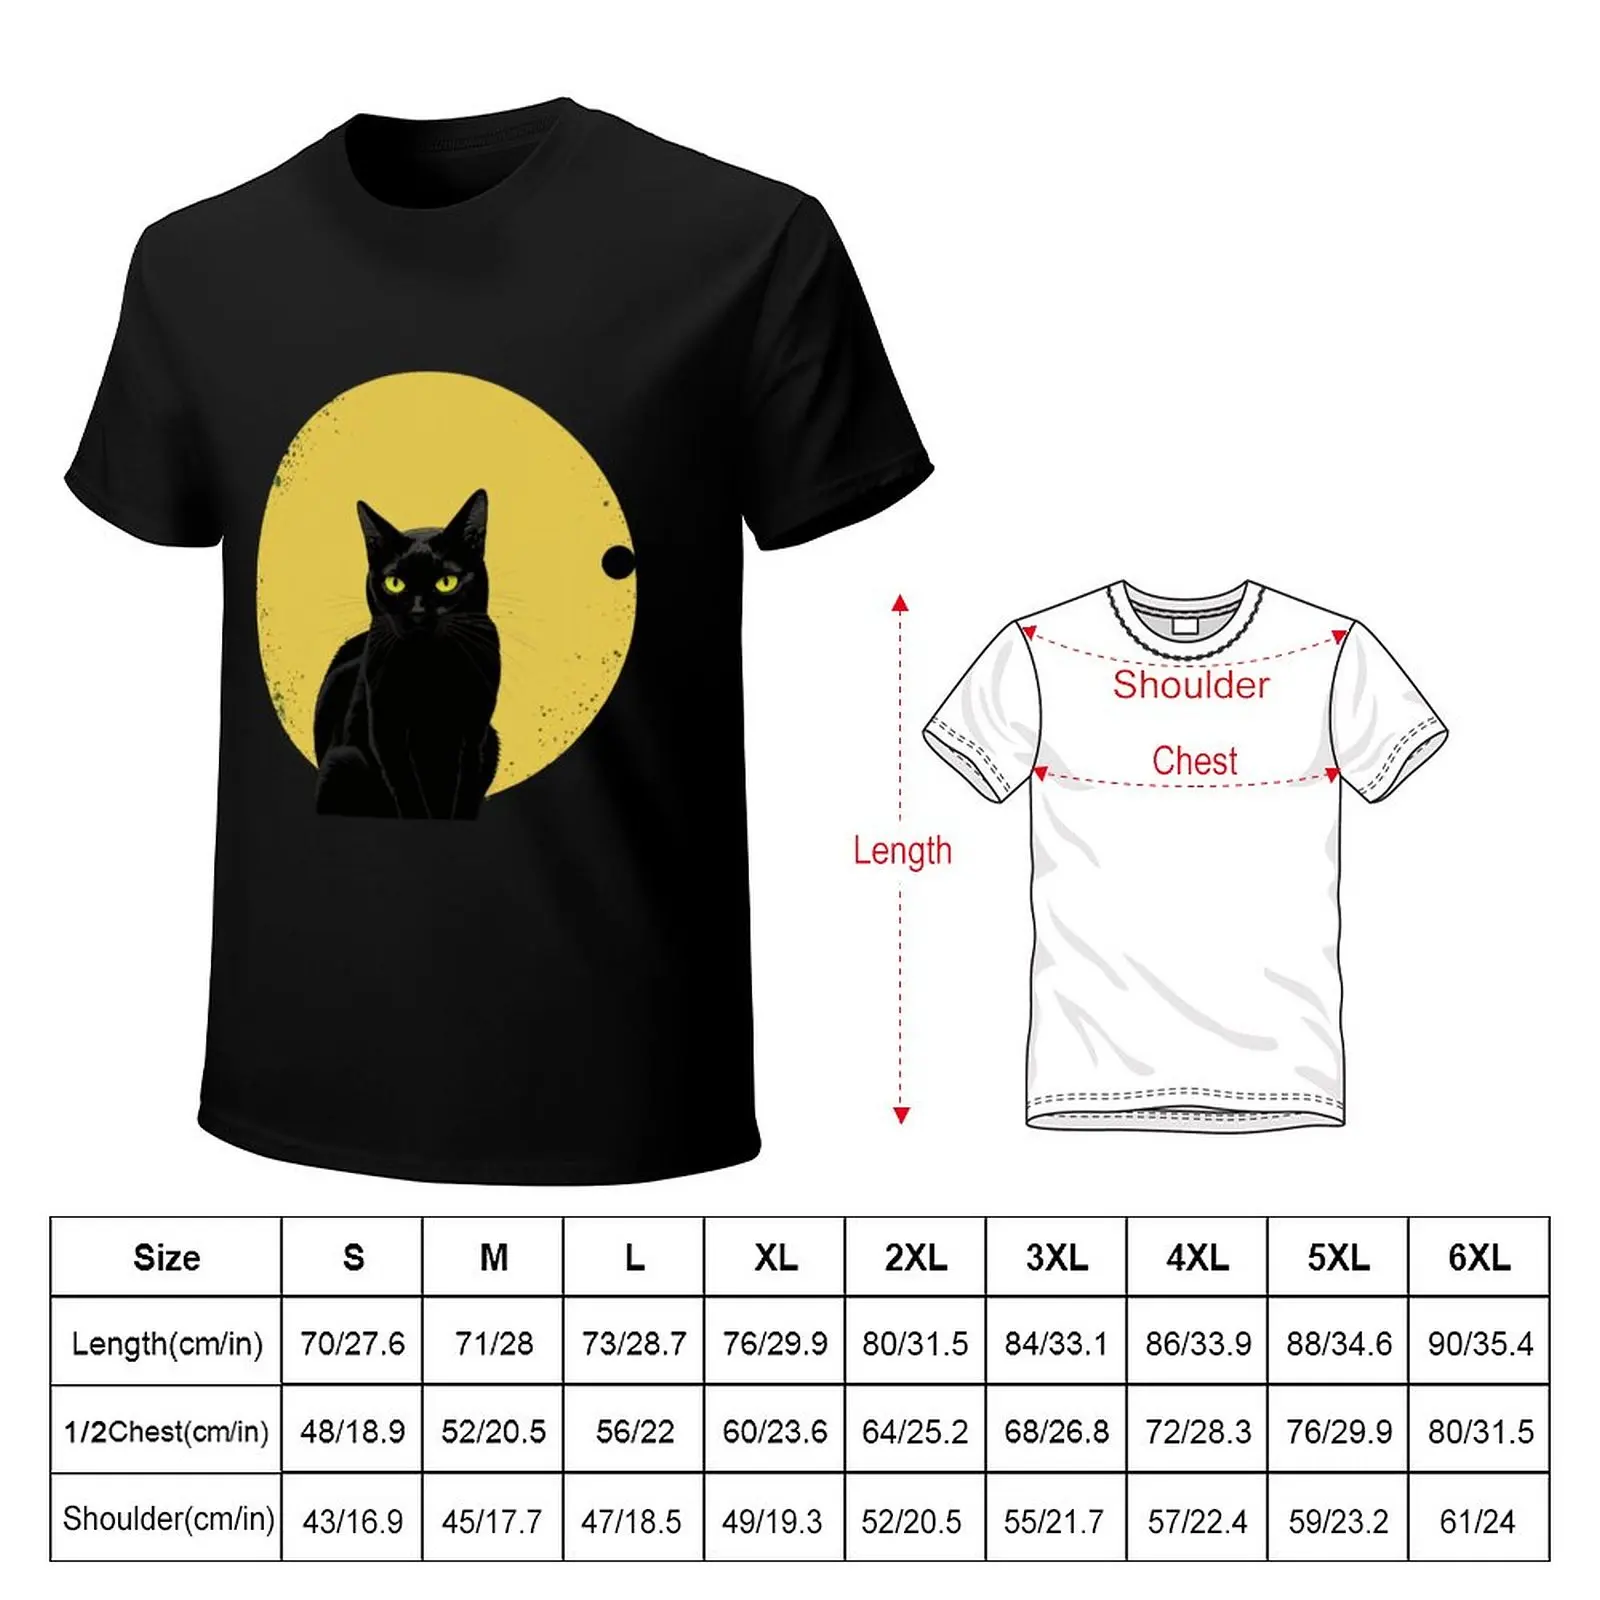 Футболка Cat Daddy Black Cat в винтажном стиле восьмидесятых, одежда из аниме, великолепная футболка, мужские футболки для больших и высоких - 1